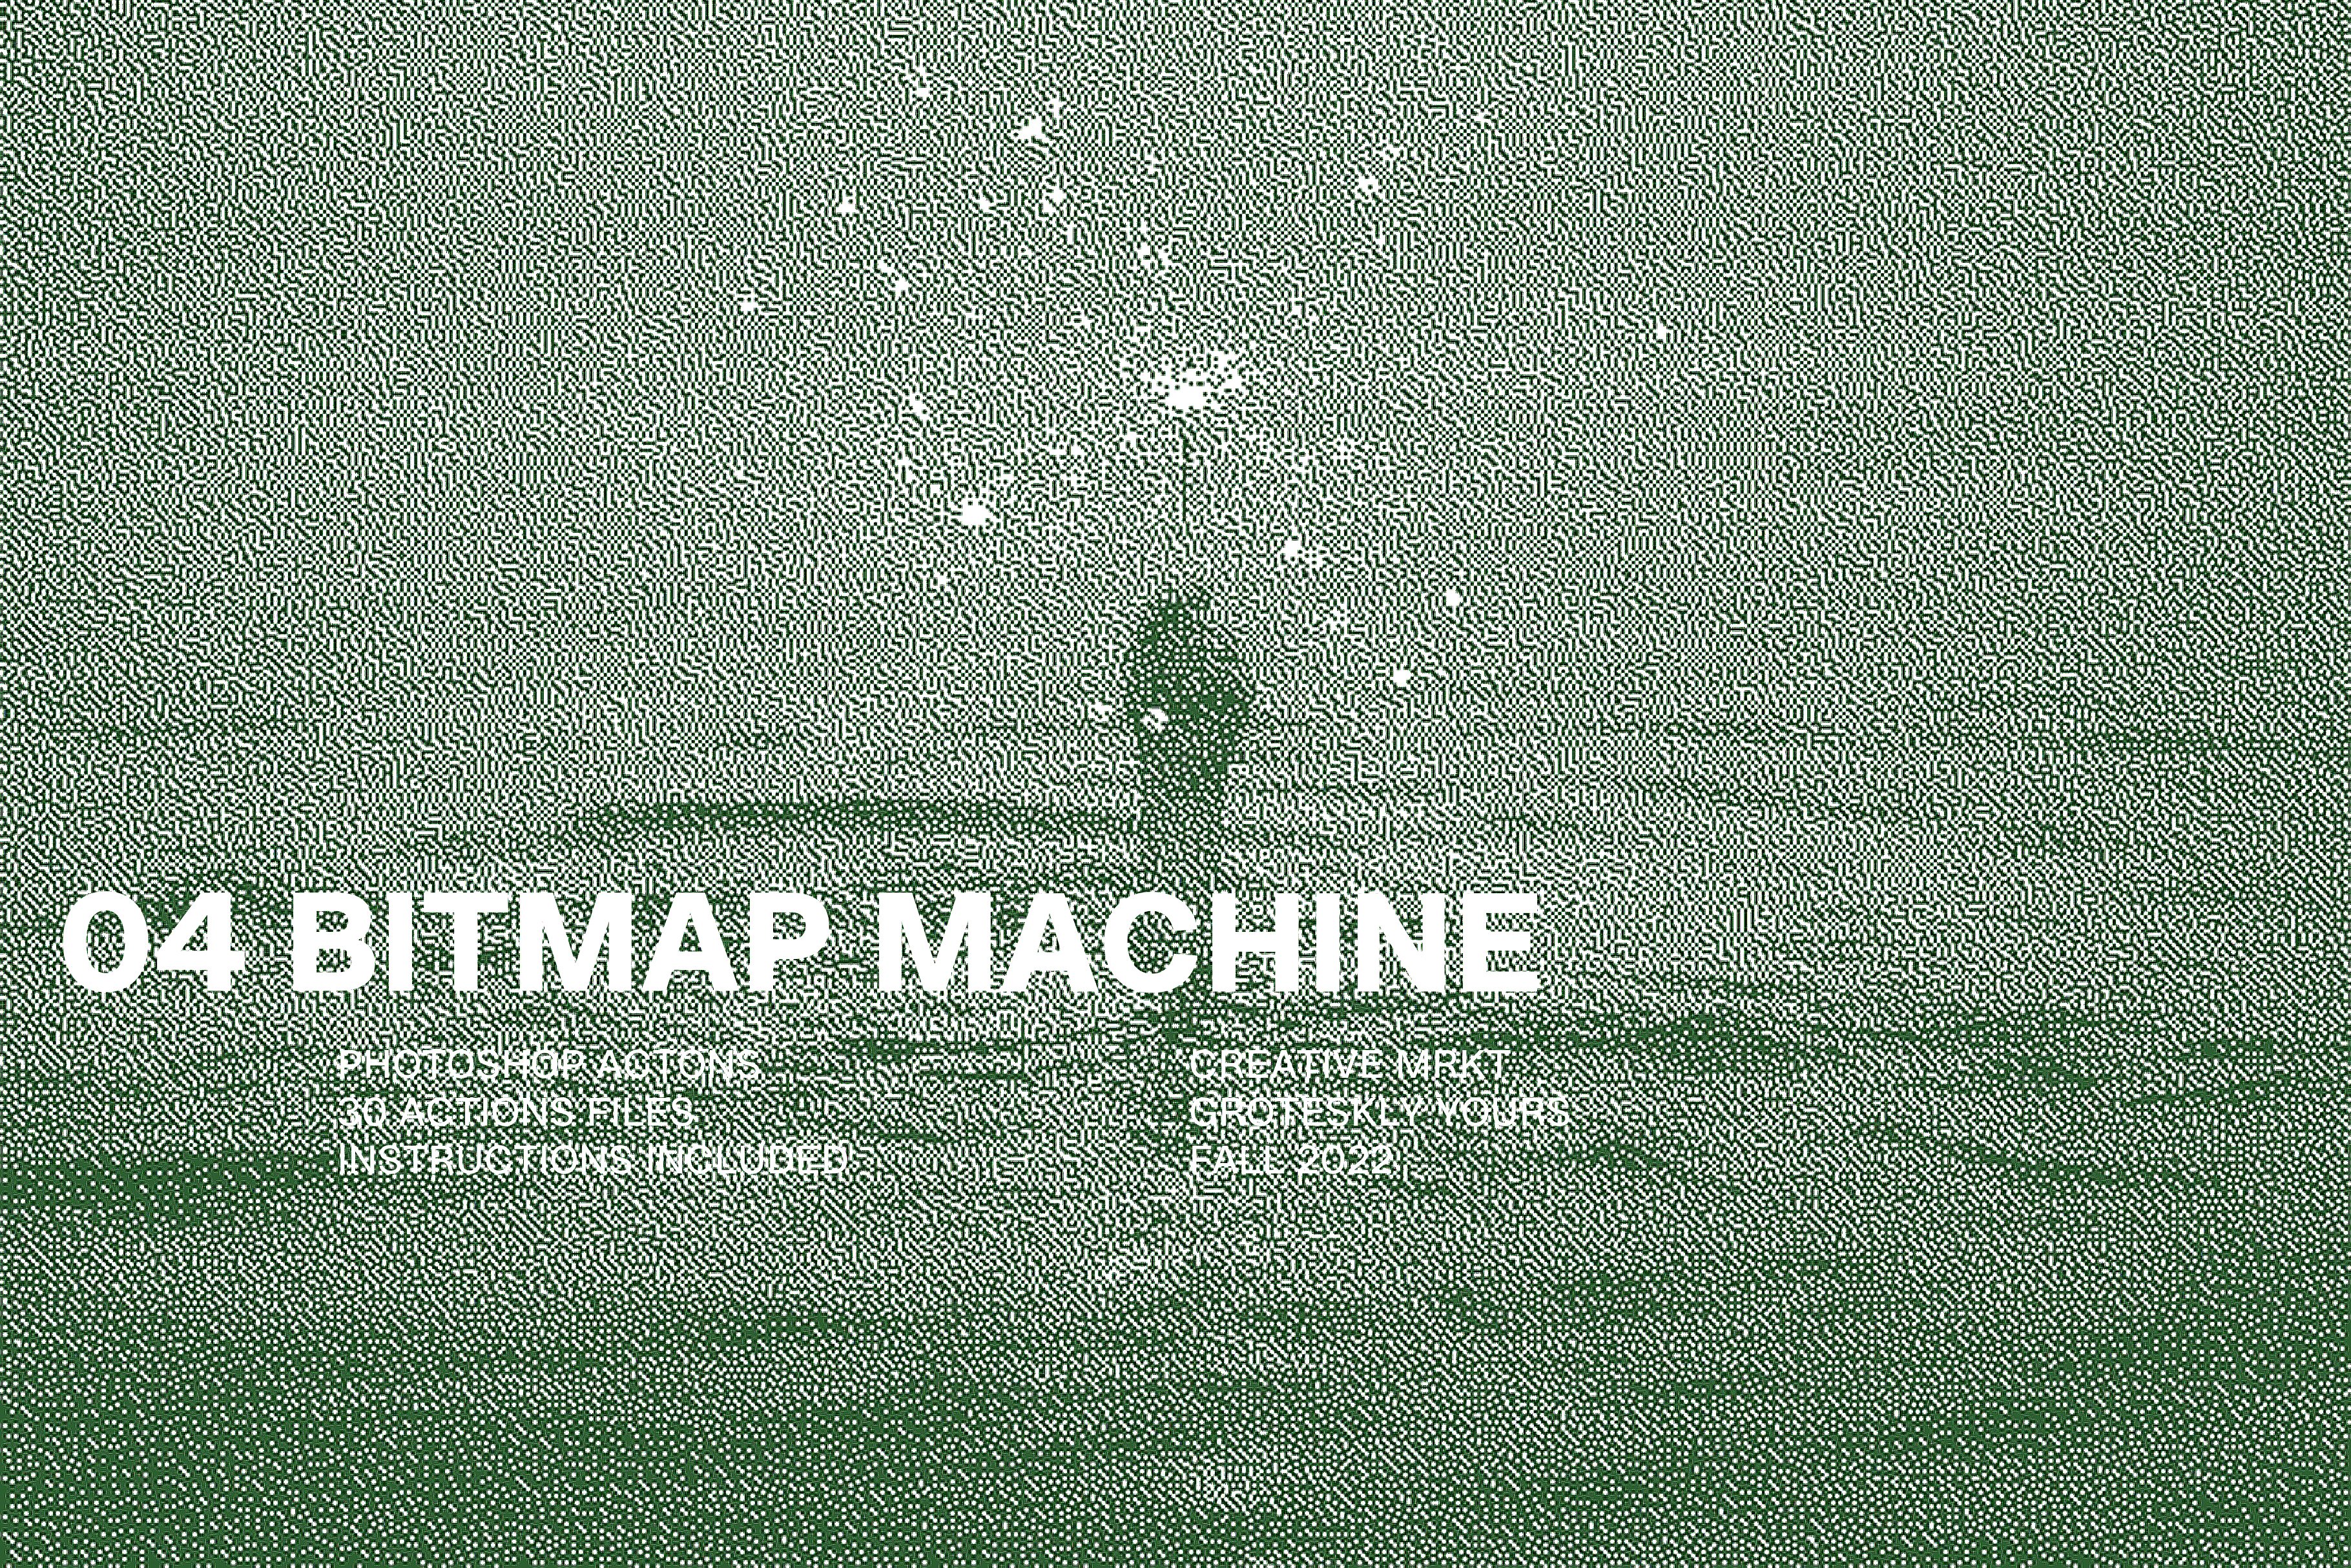 04: Bitmap Machine for Photoshopcover image.